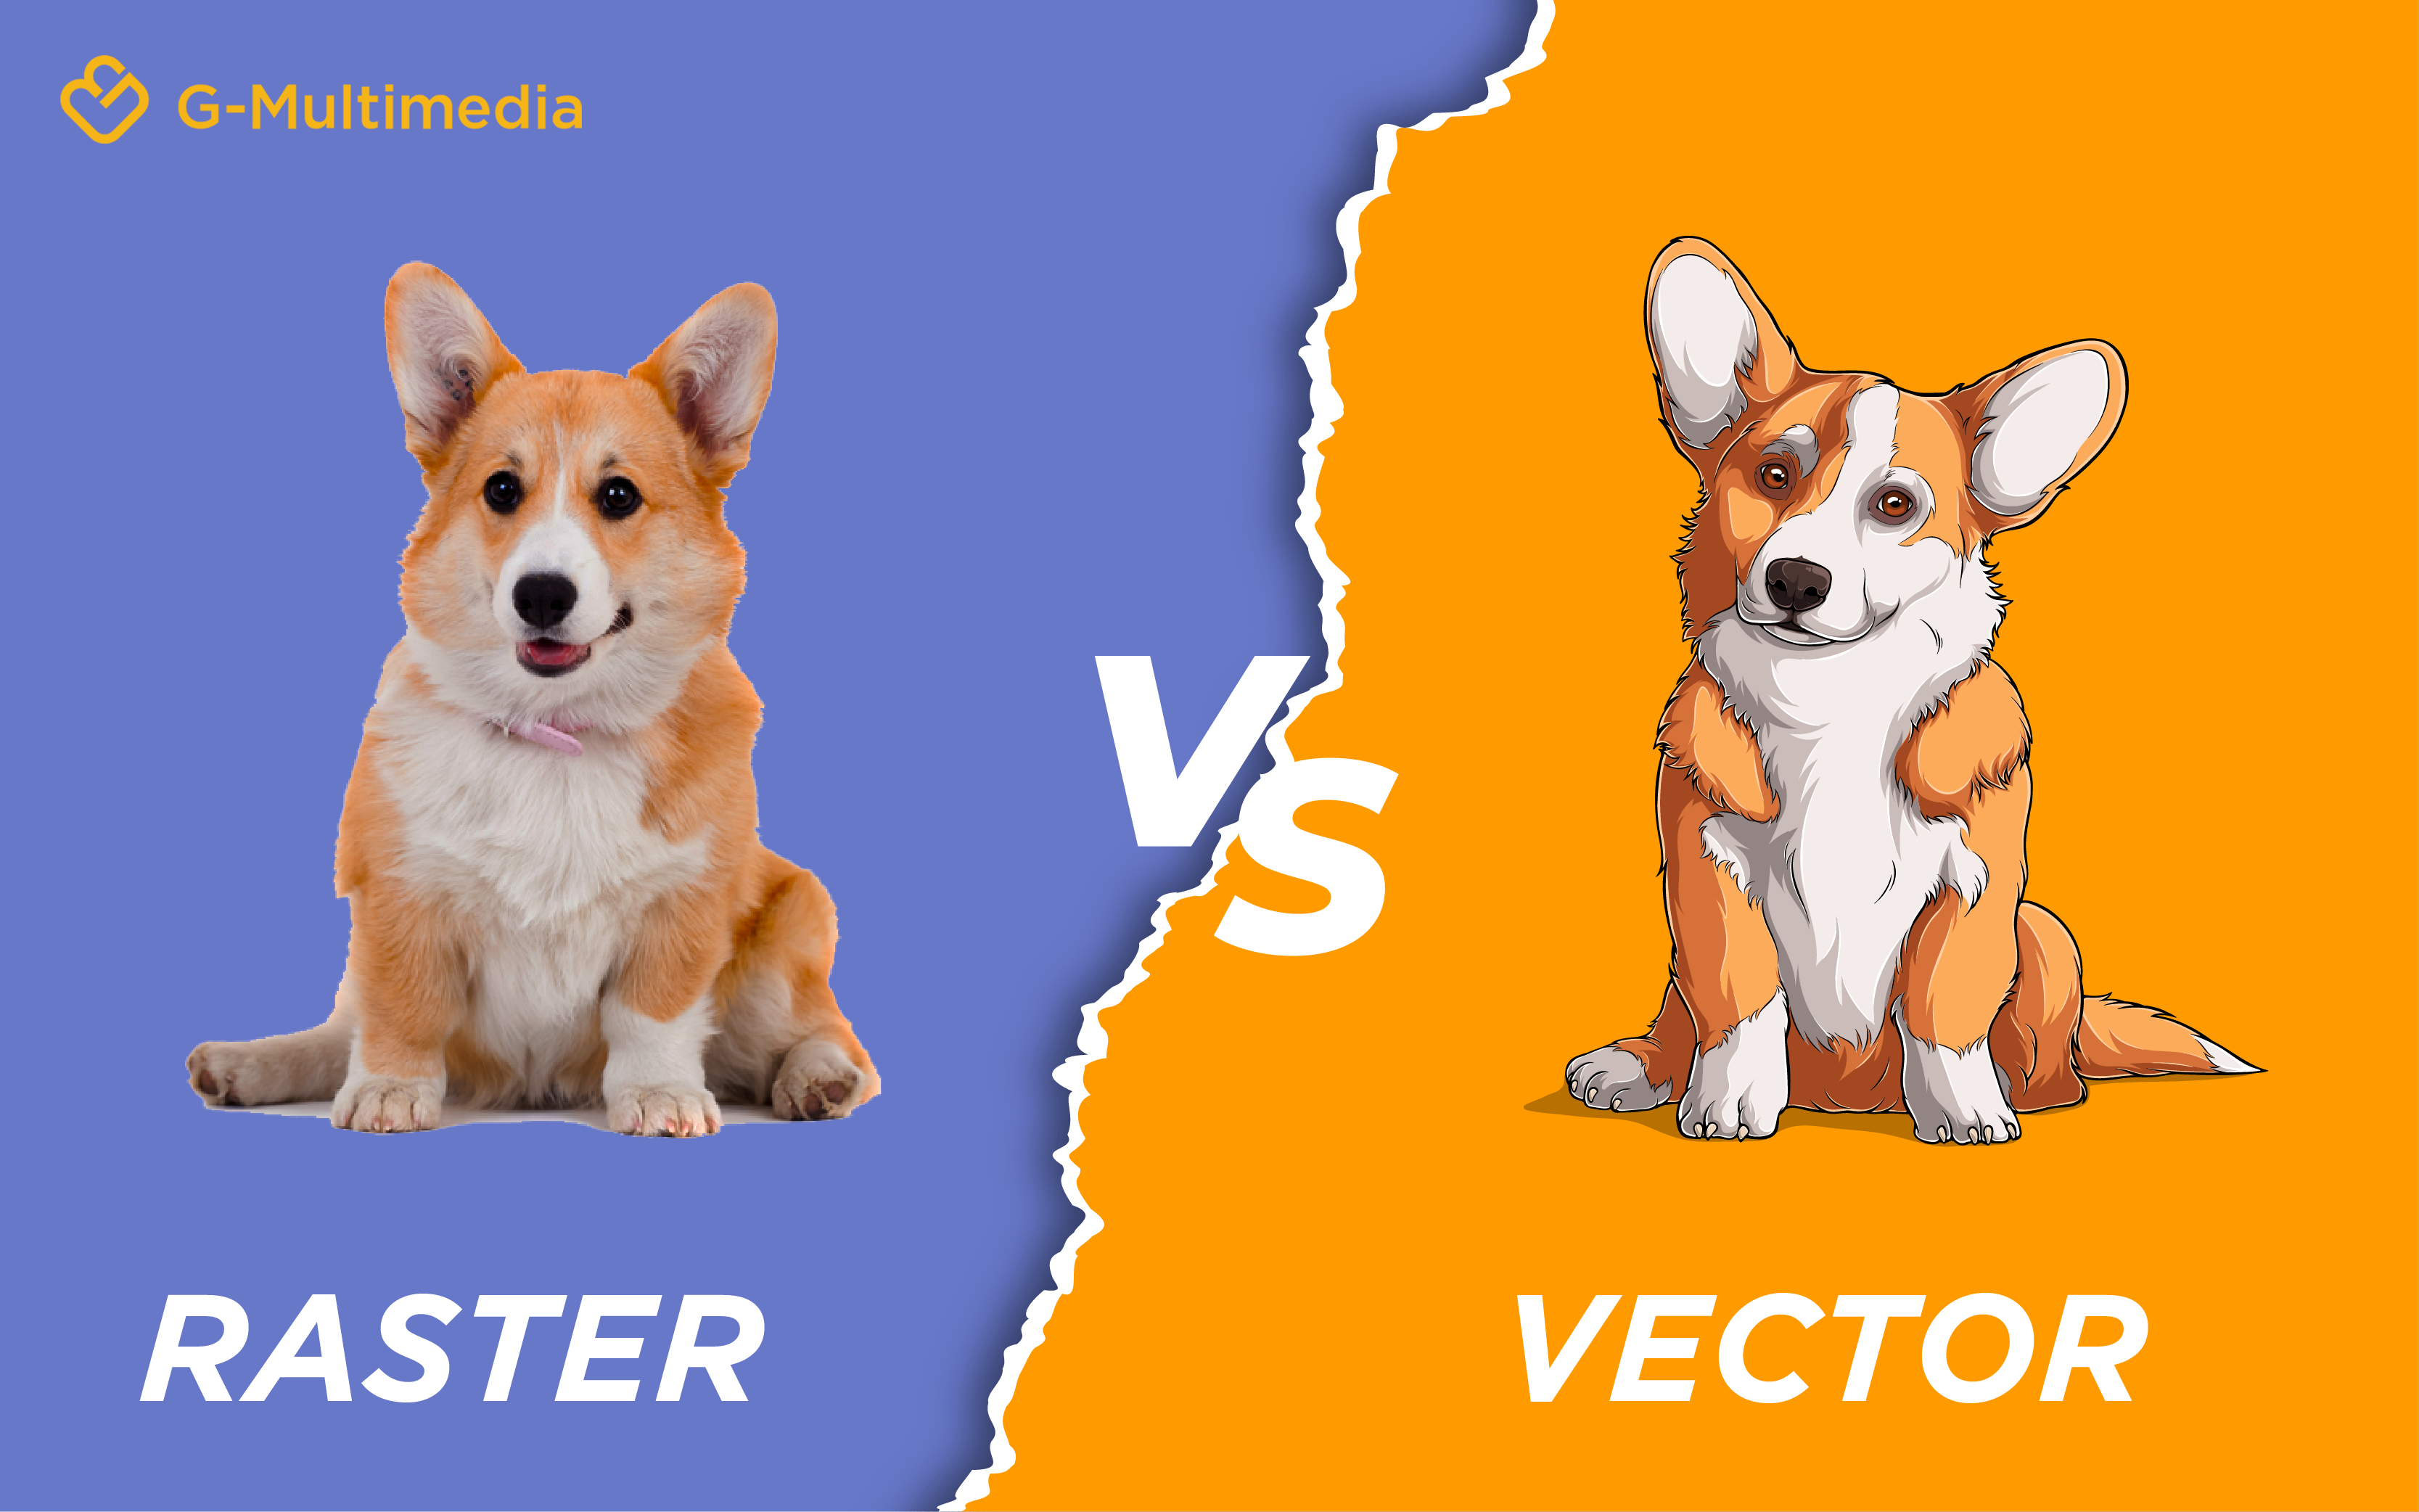 Tìm hiểu về sự khác biệt giữa hai dạng mã hóa hình ảnh là Vector và Raster. Nắm vững kiến thức này sẽ giúp bạn dễ dàng sử dụng và chỉnh sửa được hình ảnh của mình một cách tốt nhất.